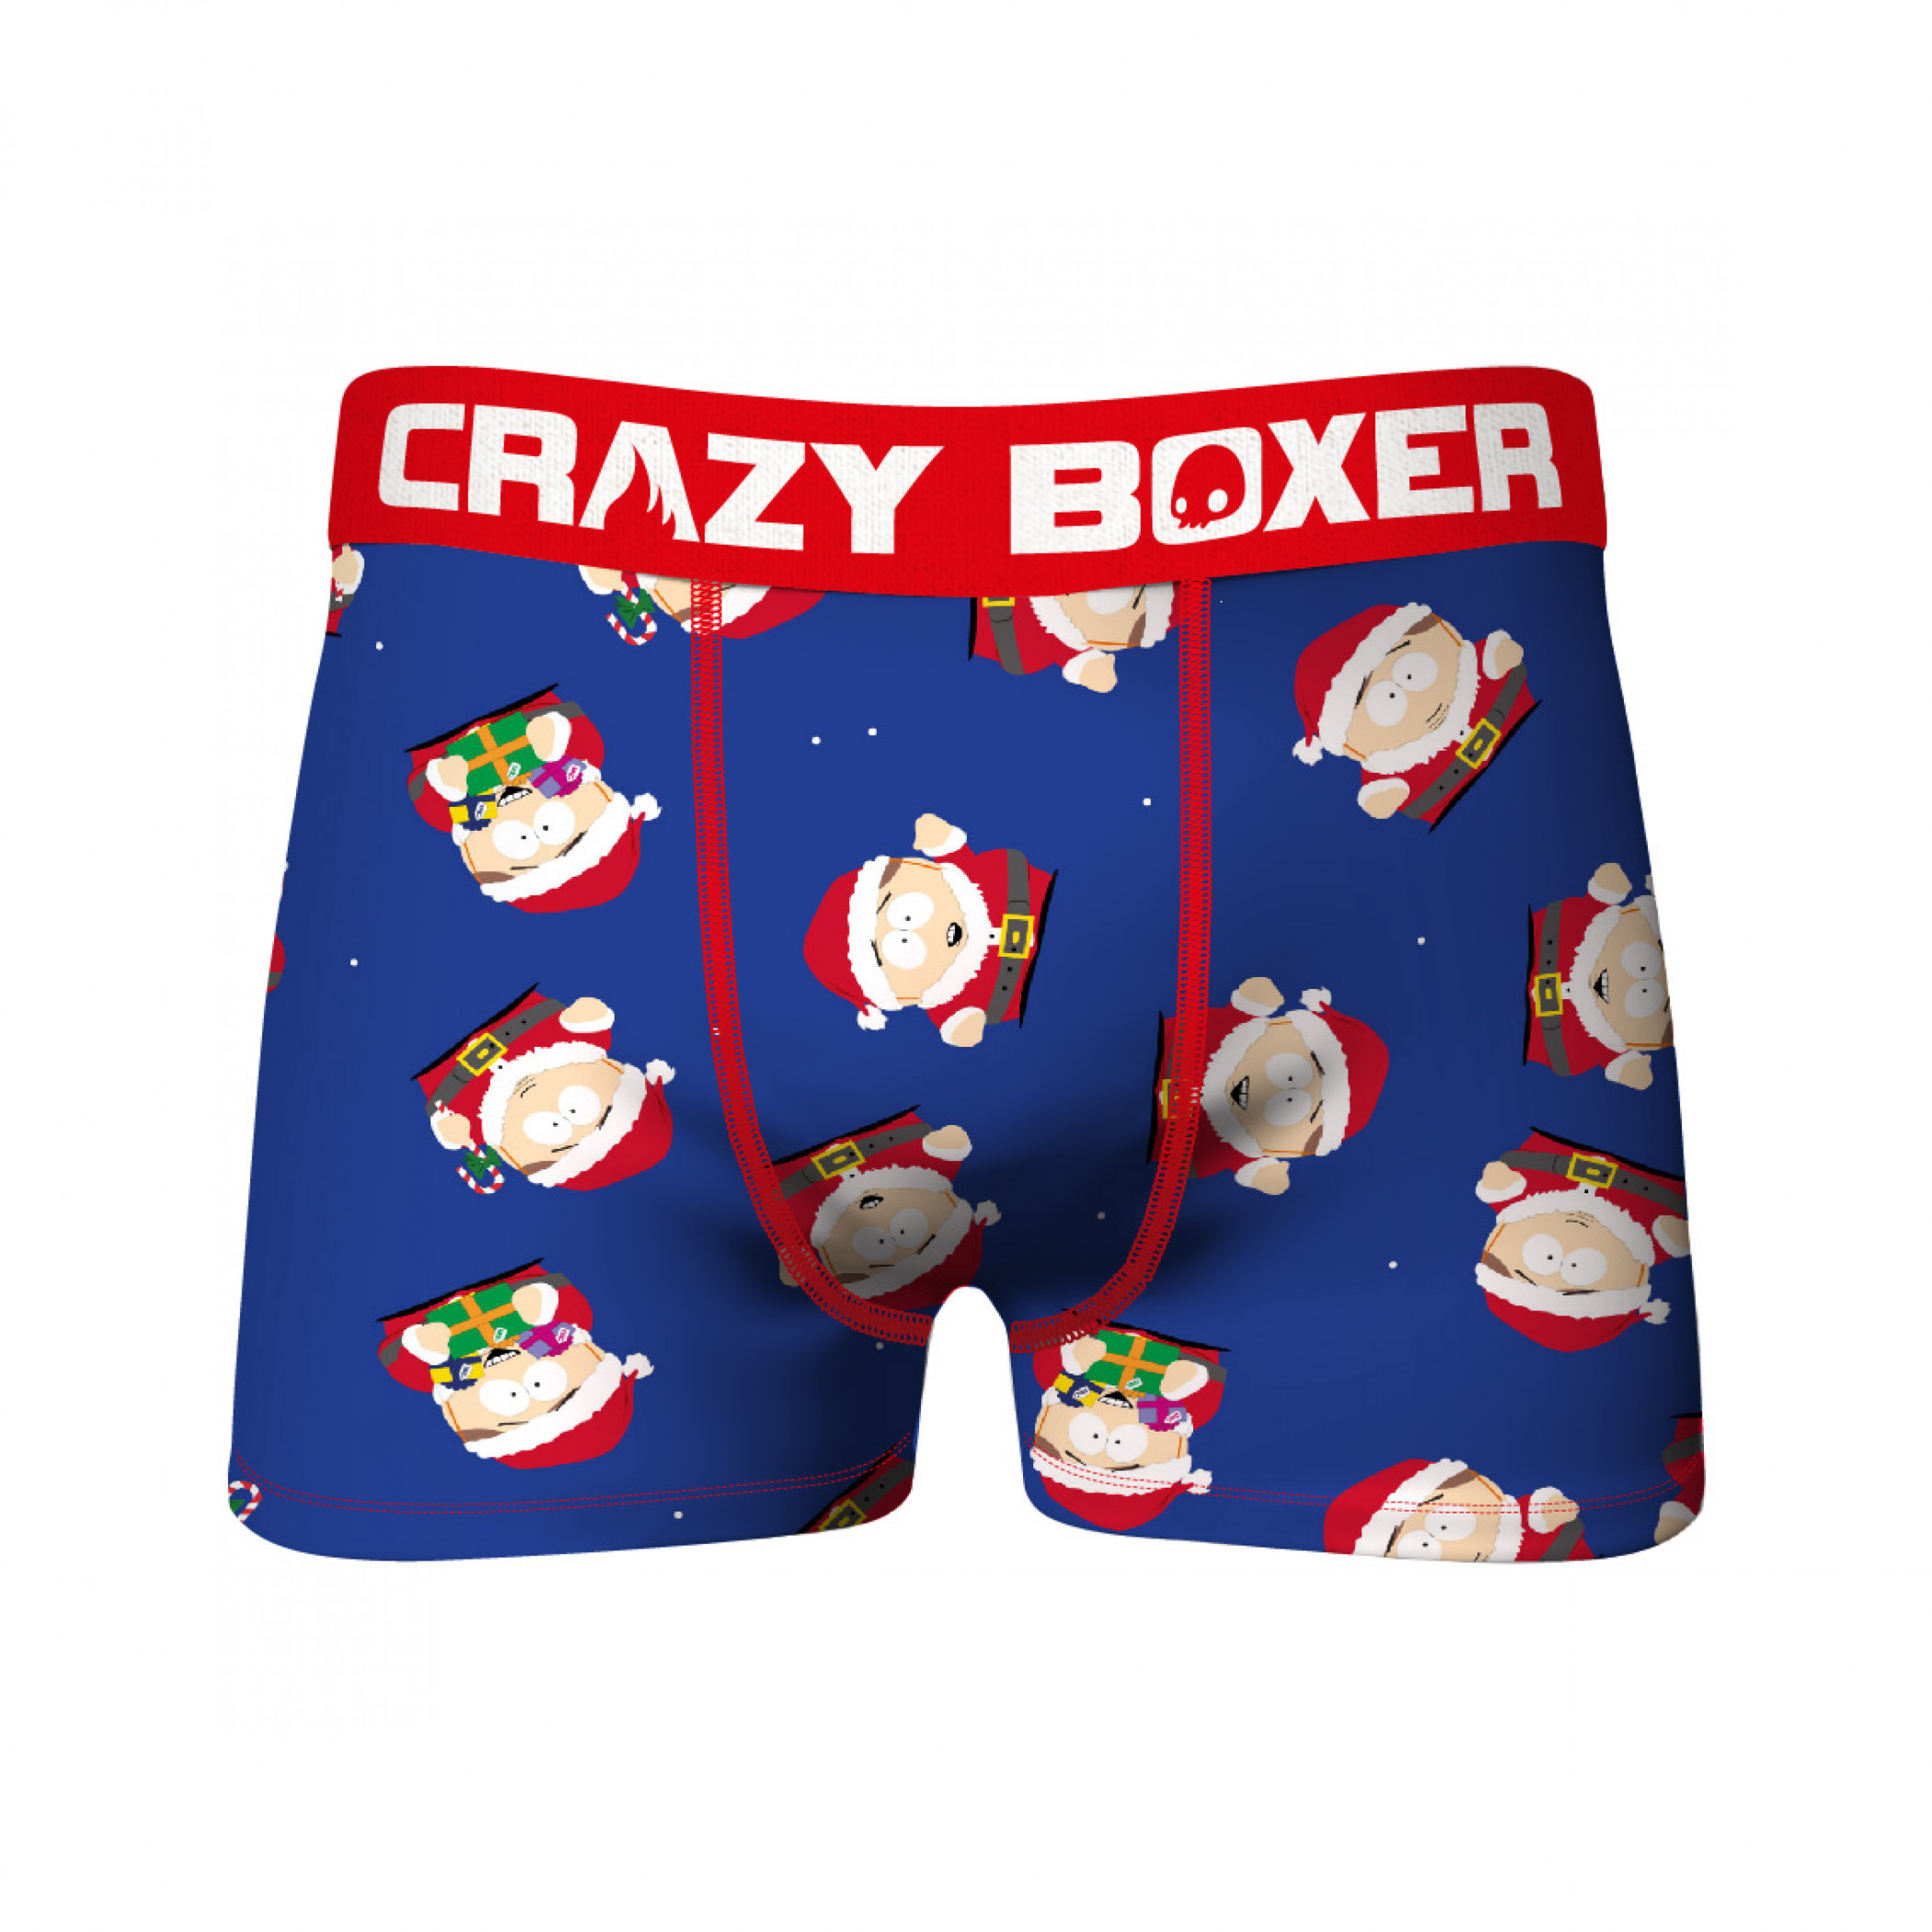 South Park Cartman Santa & Mr. Hankey 2-pack Underwear Boxer Briefs